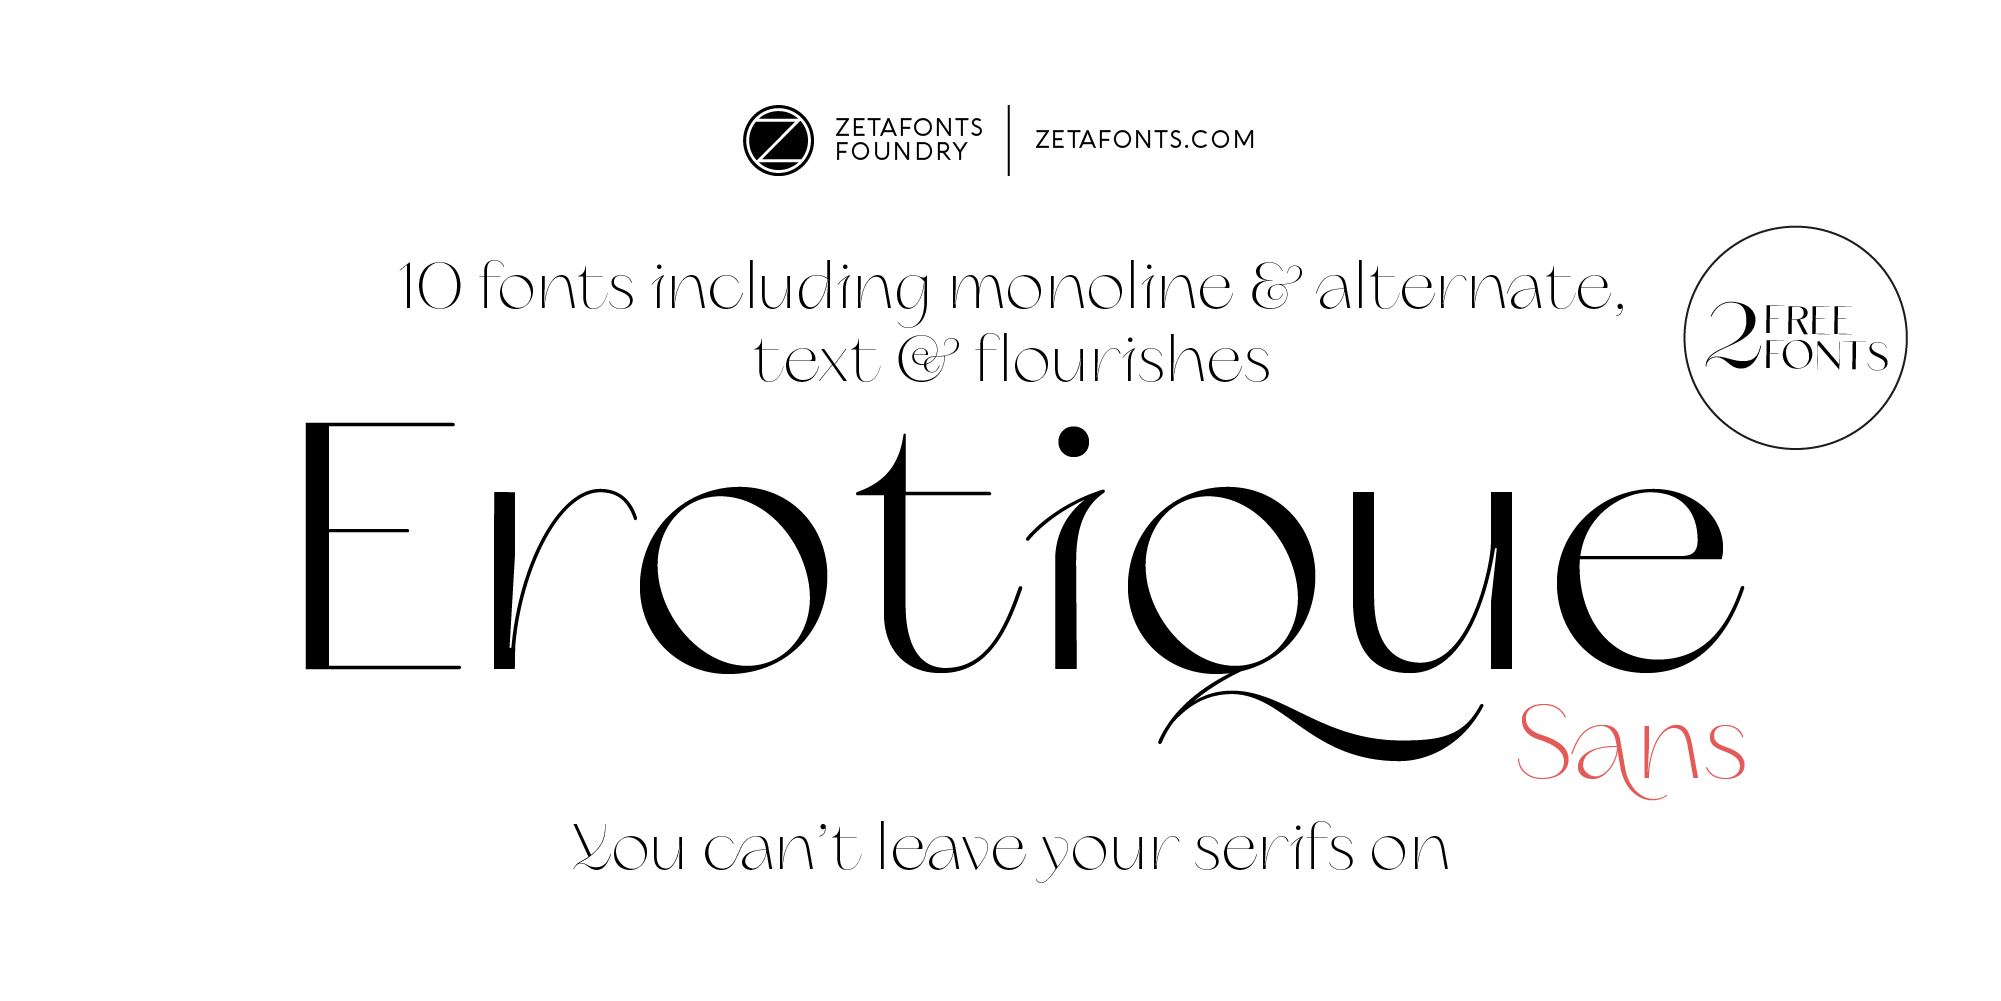 Erotique Sans Typeface By Zetafonts